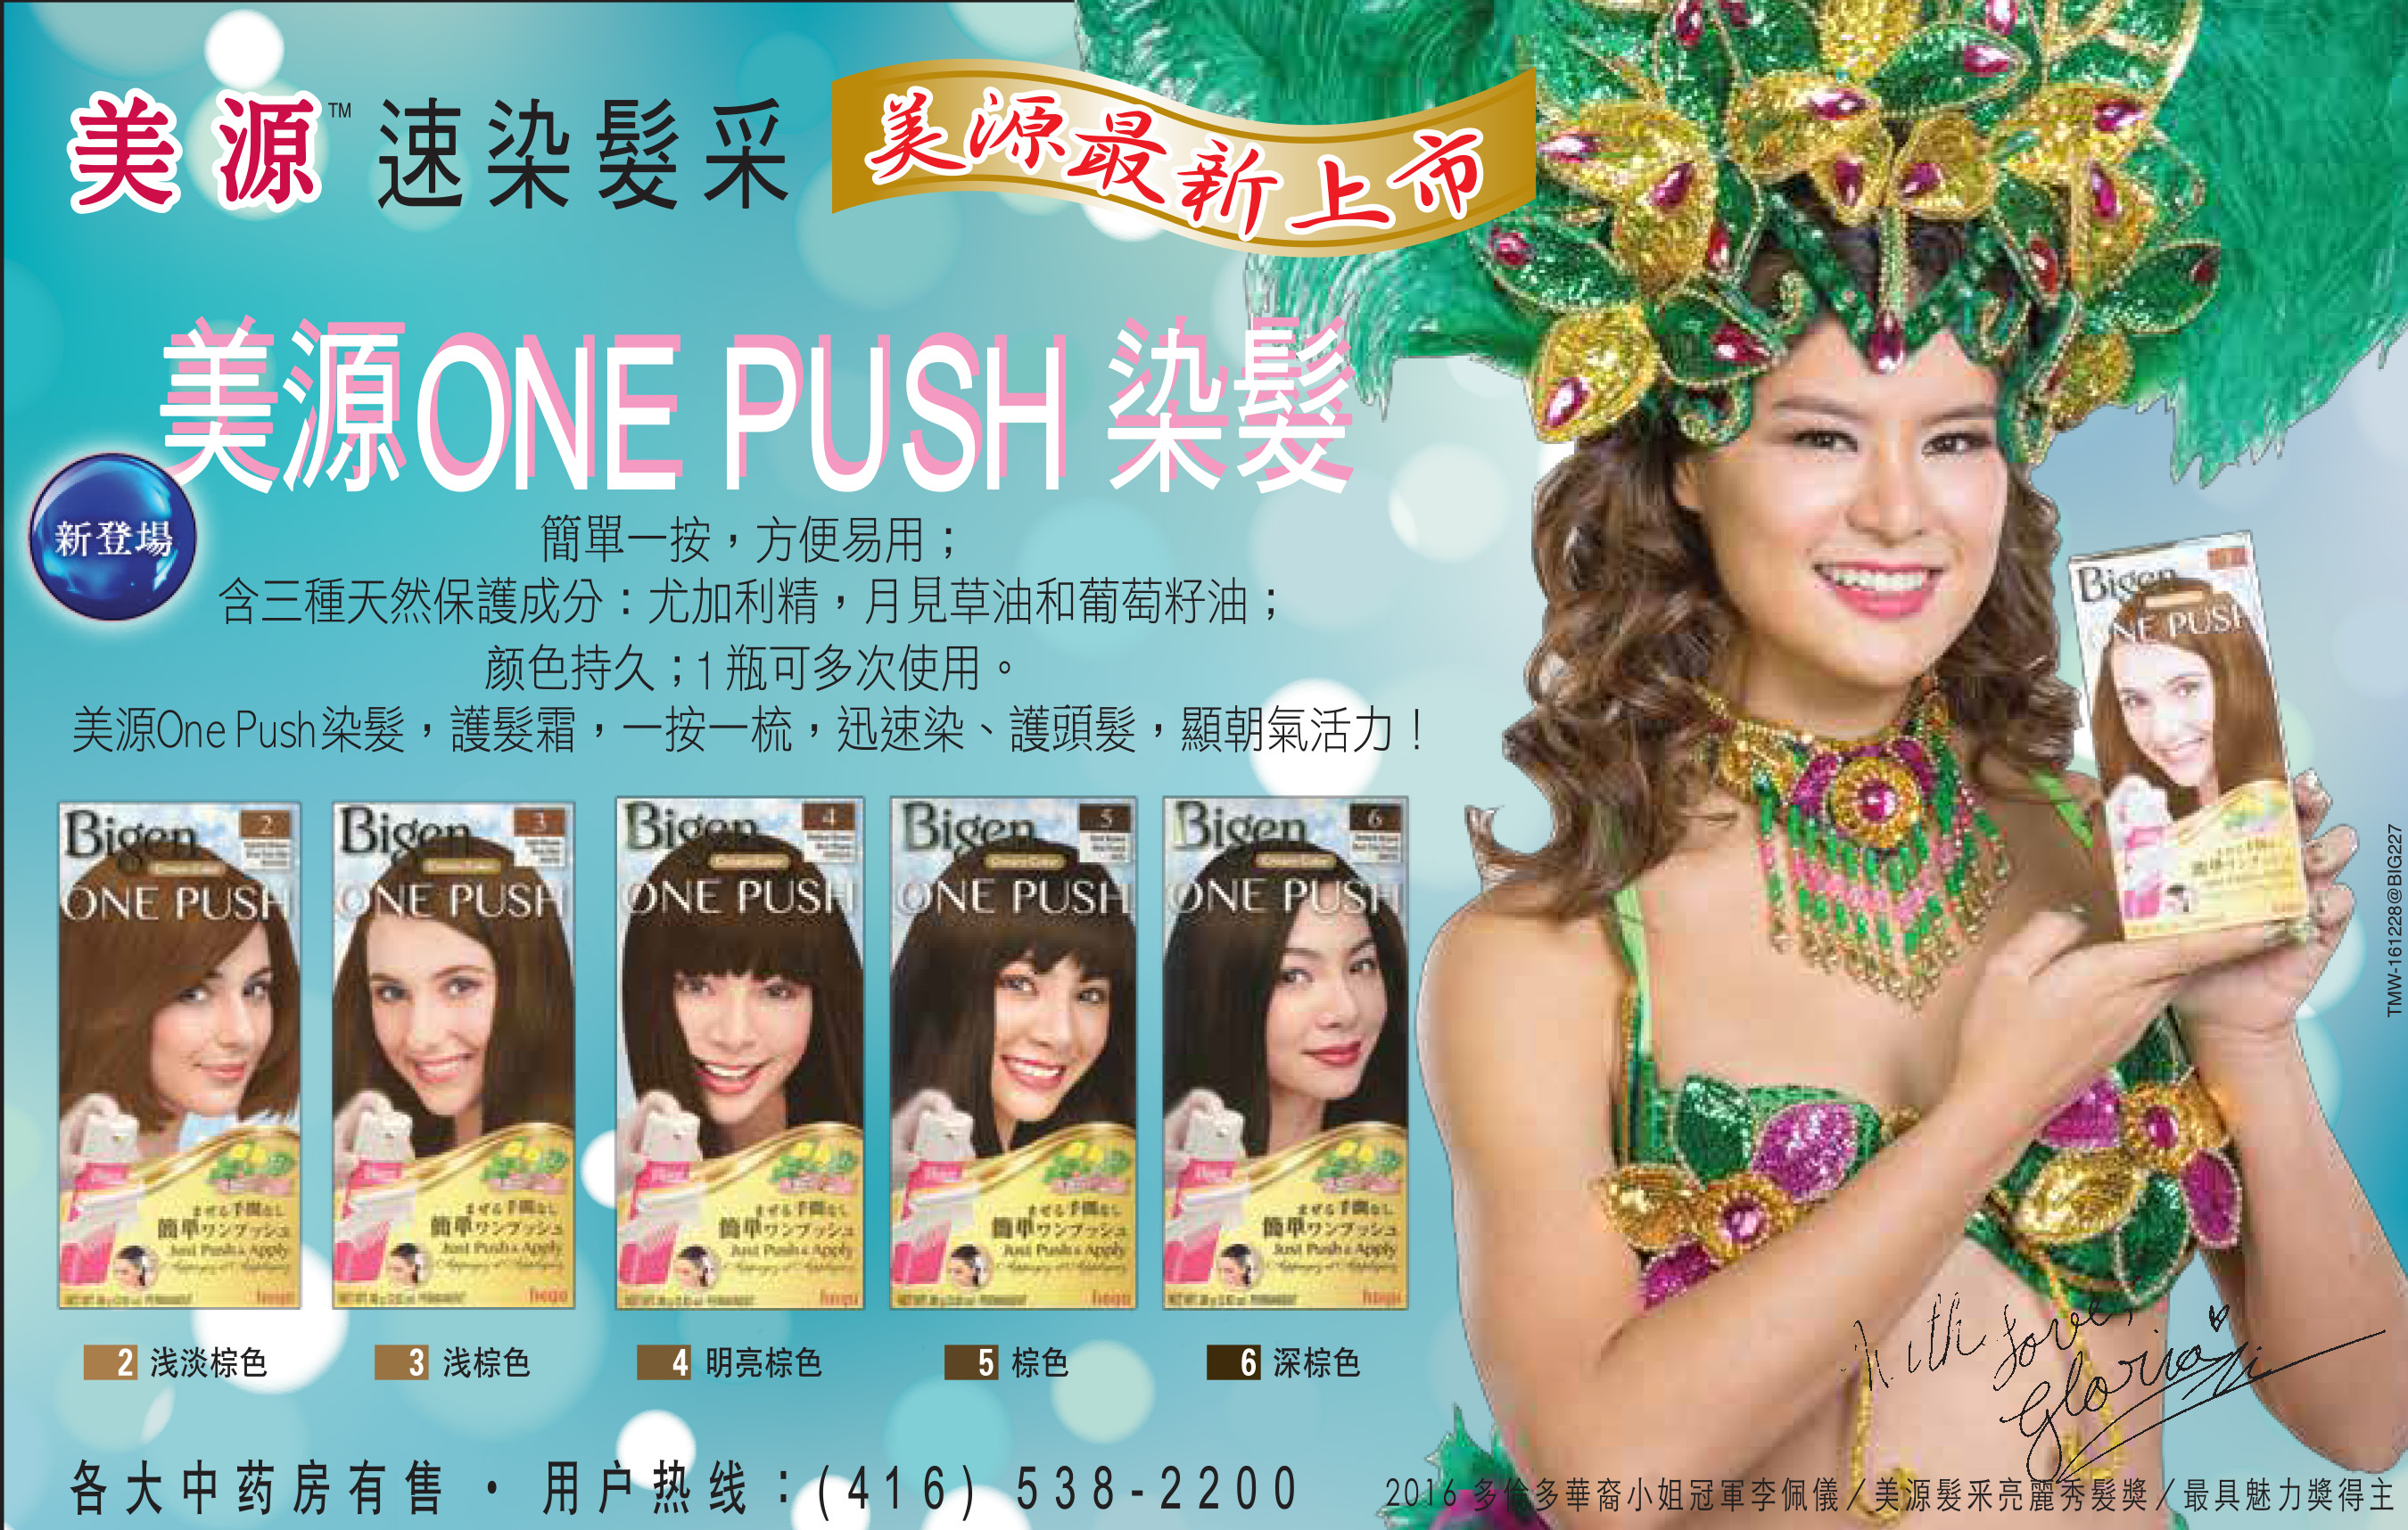 Miss Bigen 2016 publicité du magazine chinois Ming Pao